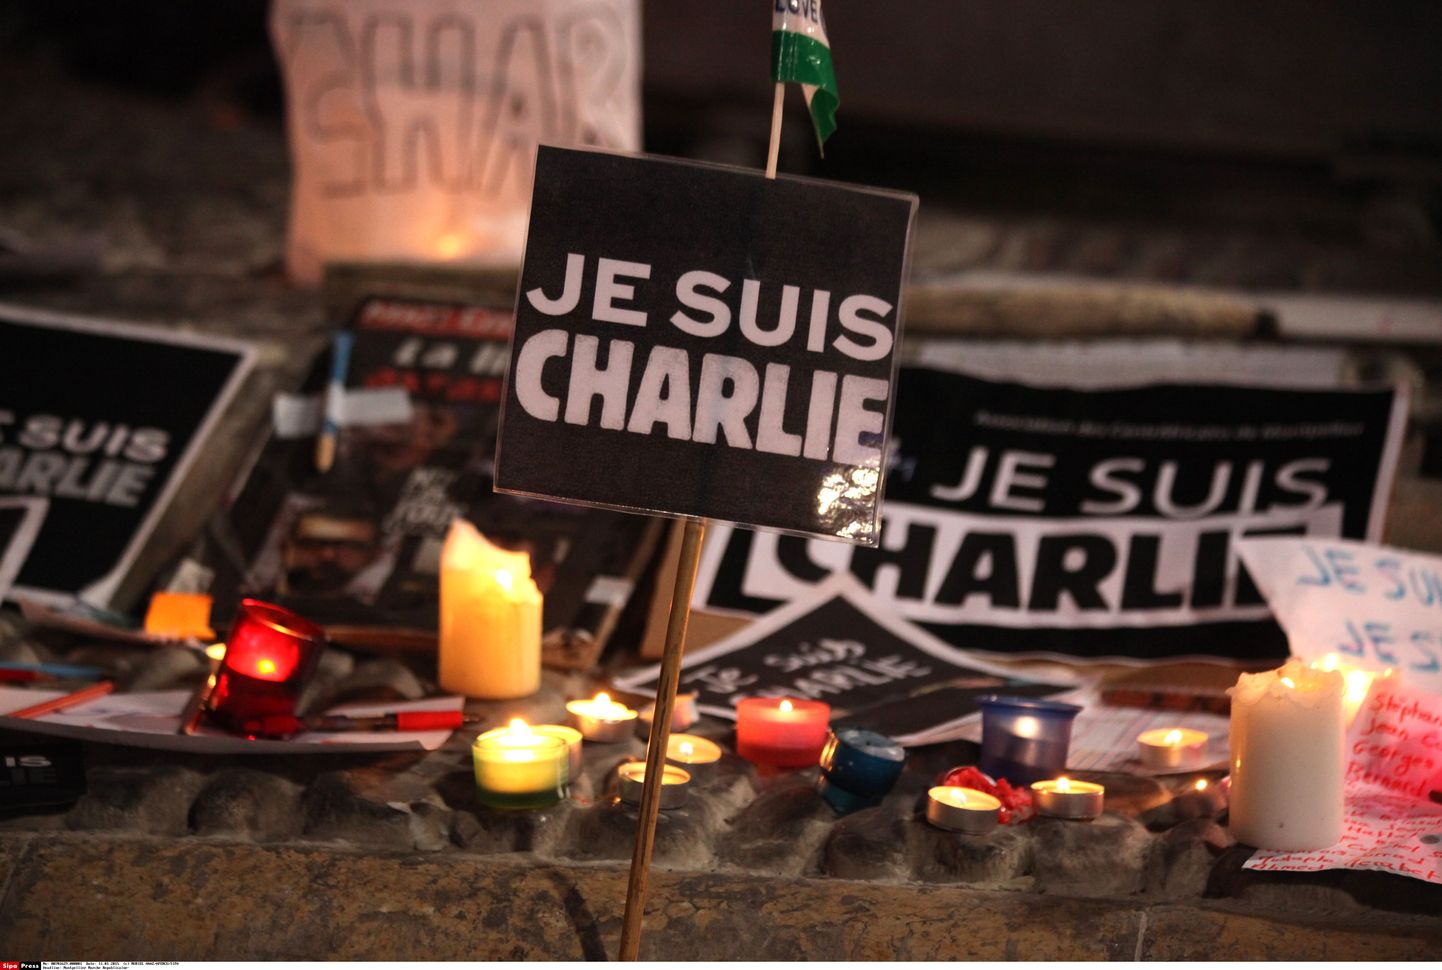 Vendade Kouachide korraldatud terrorirünnakus satiiriväljaande Charlie Hebdo toimetusele hukkus 12 inimest.